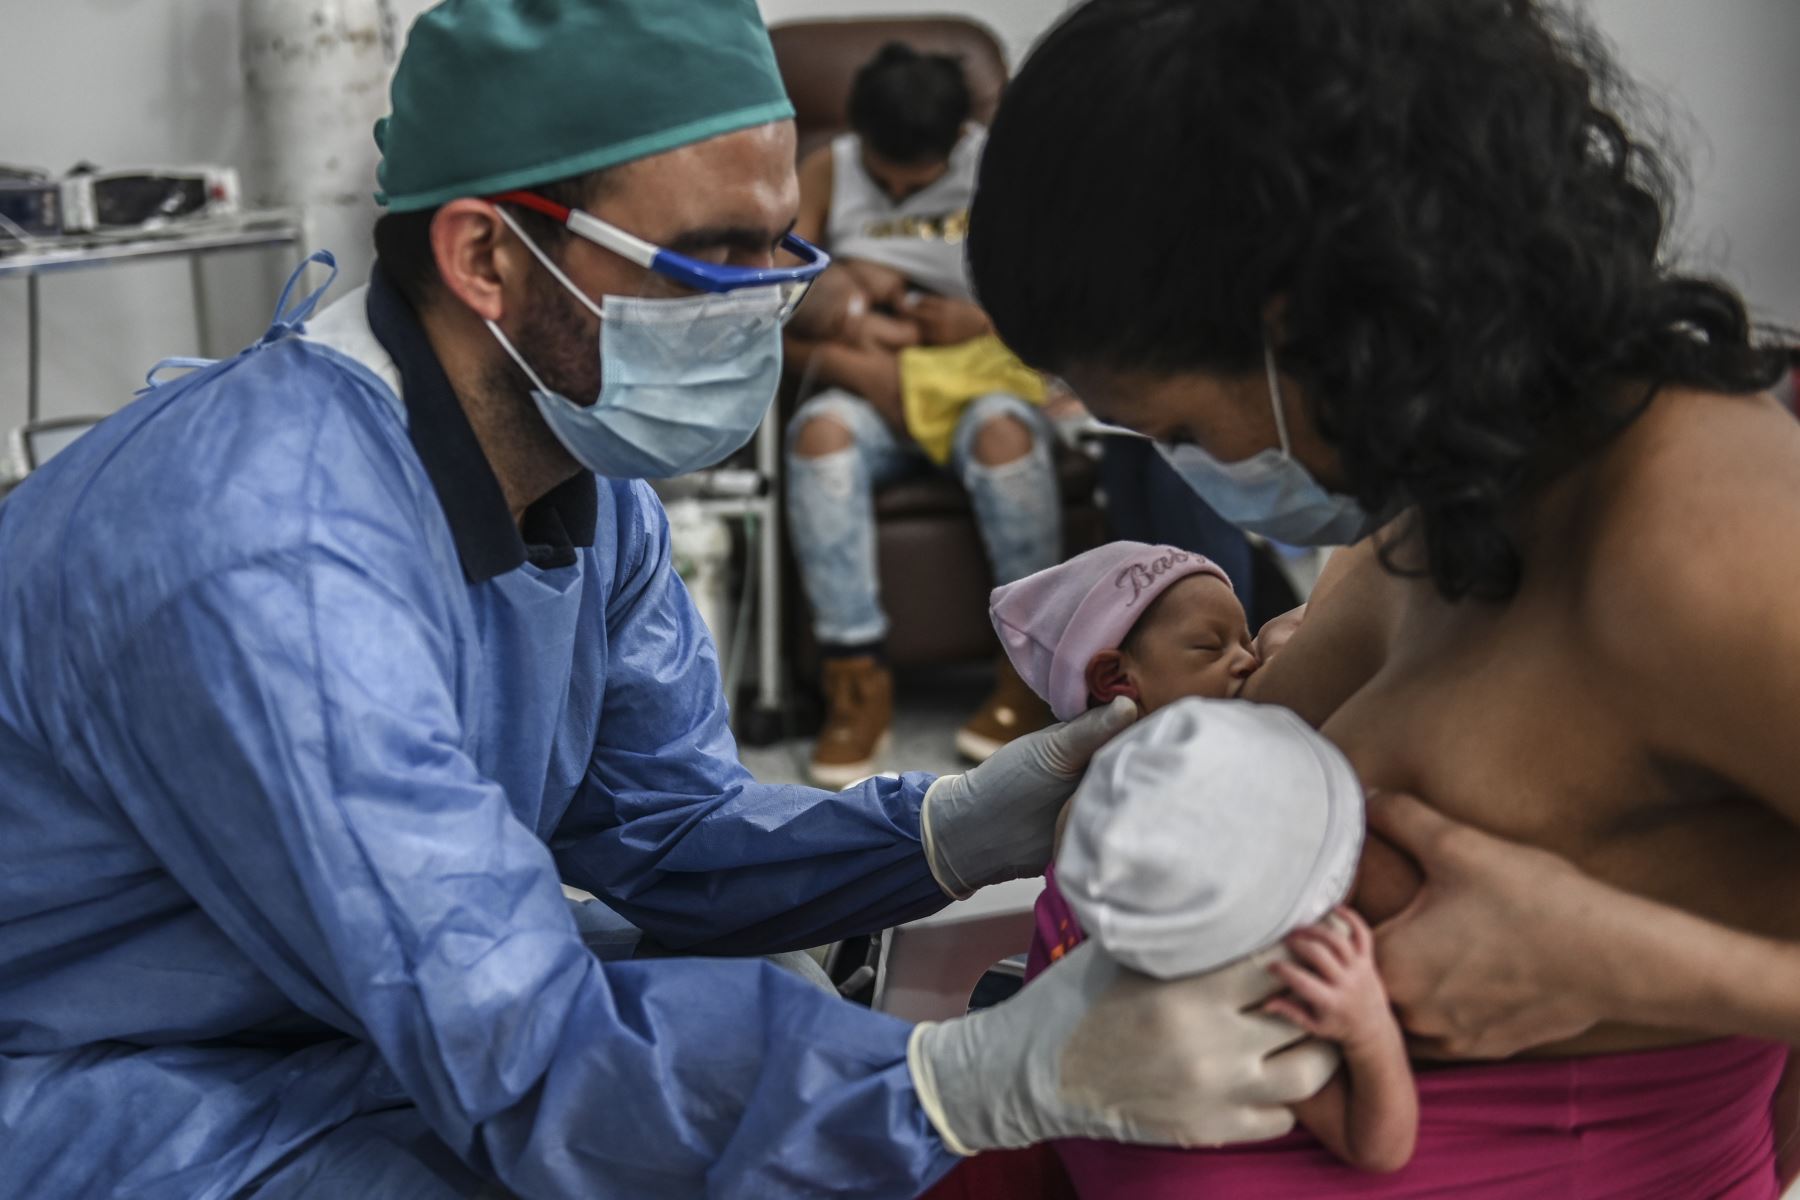 Una madre amamanta a sus gemelos recién nacidos mientras el médico la ayuda, durante la nueva pandemia de coronavirus COVID-19. Foto: AFP